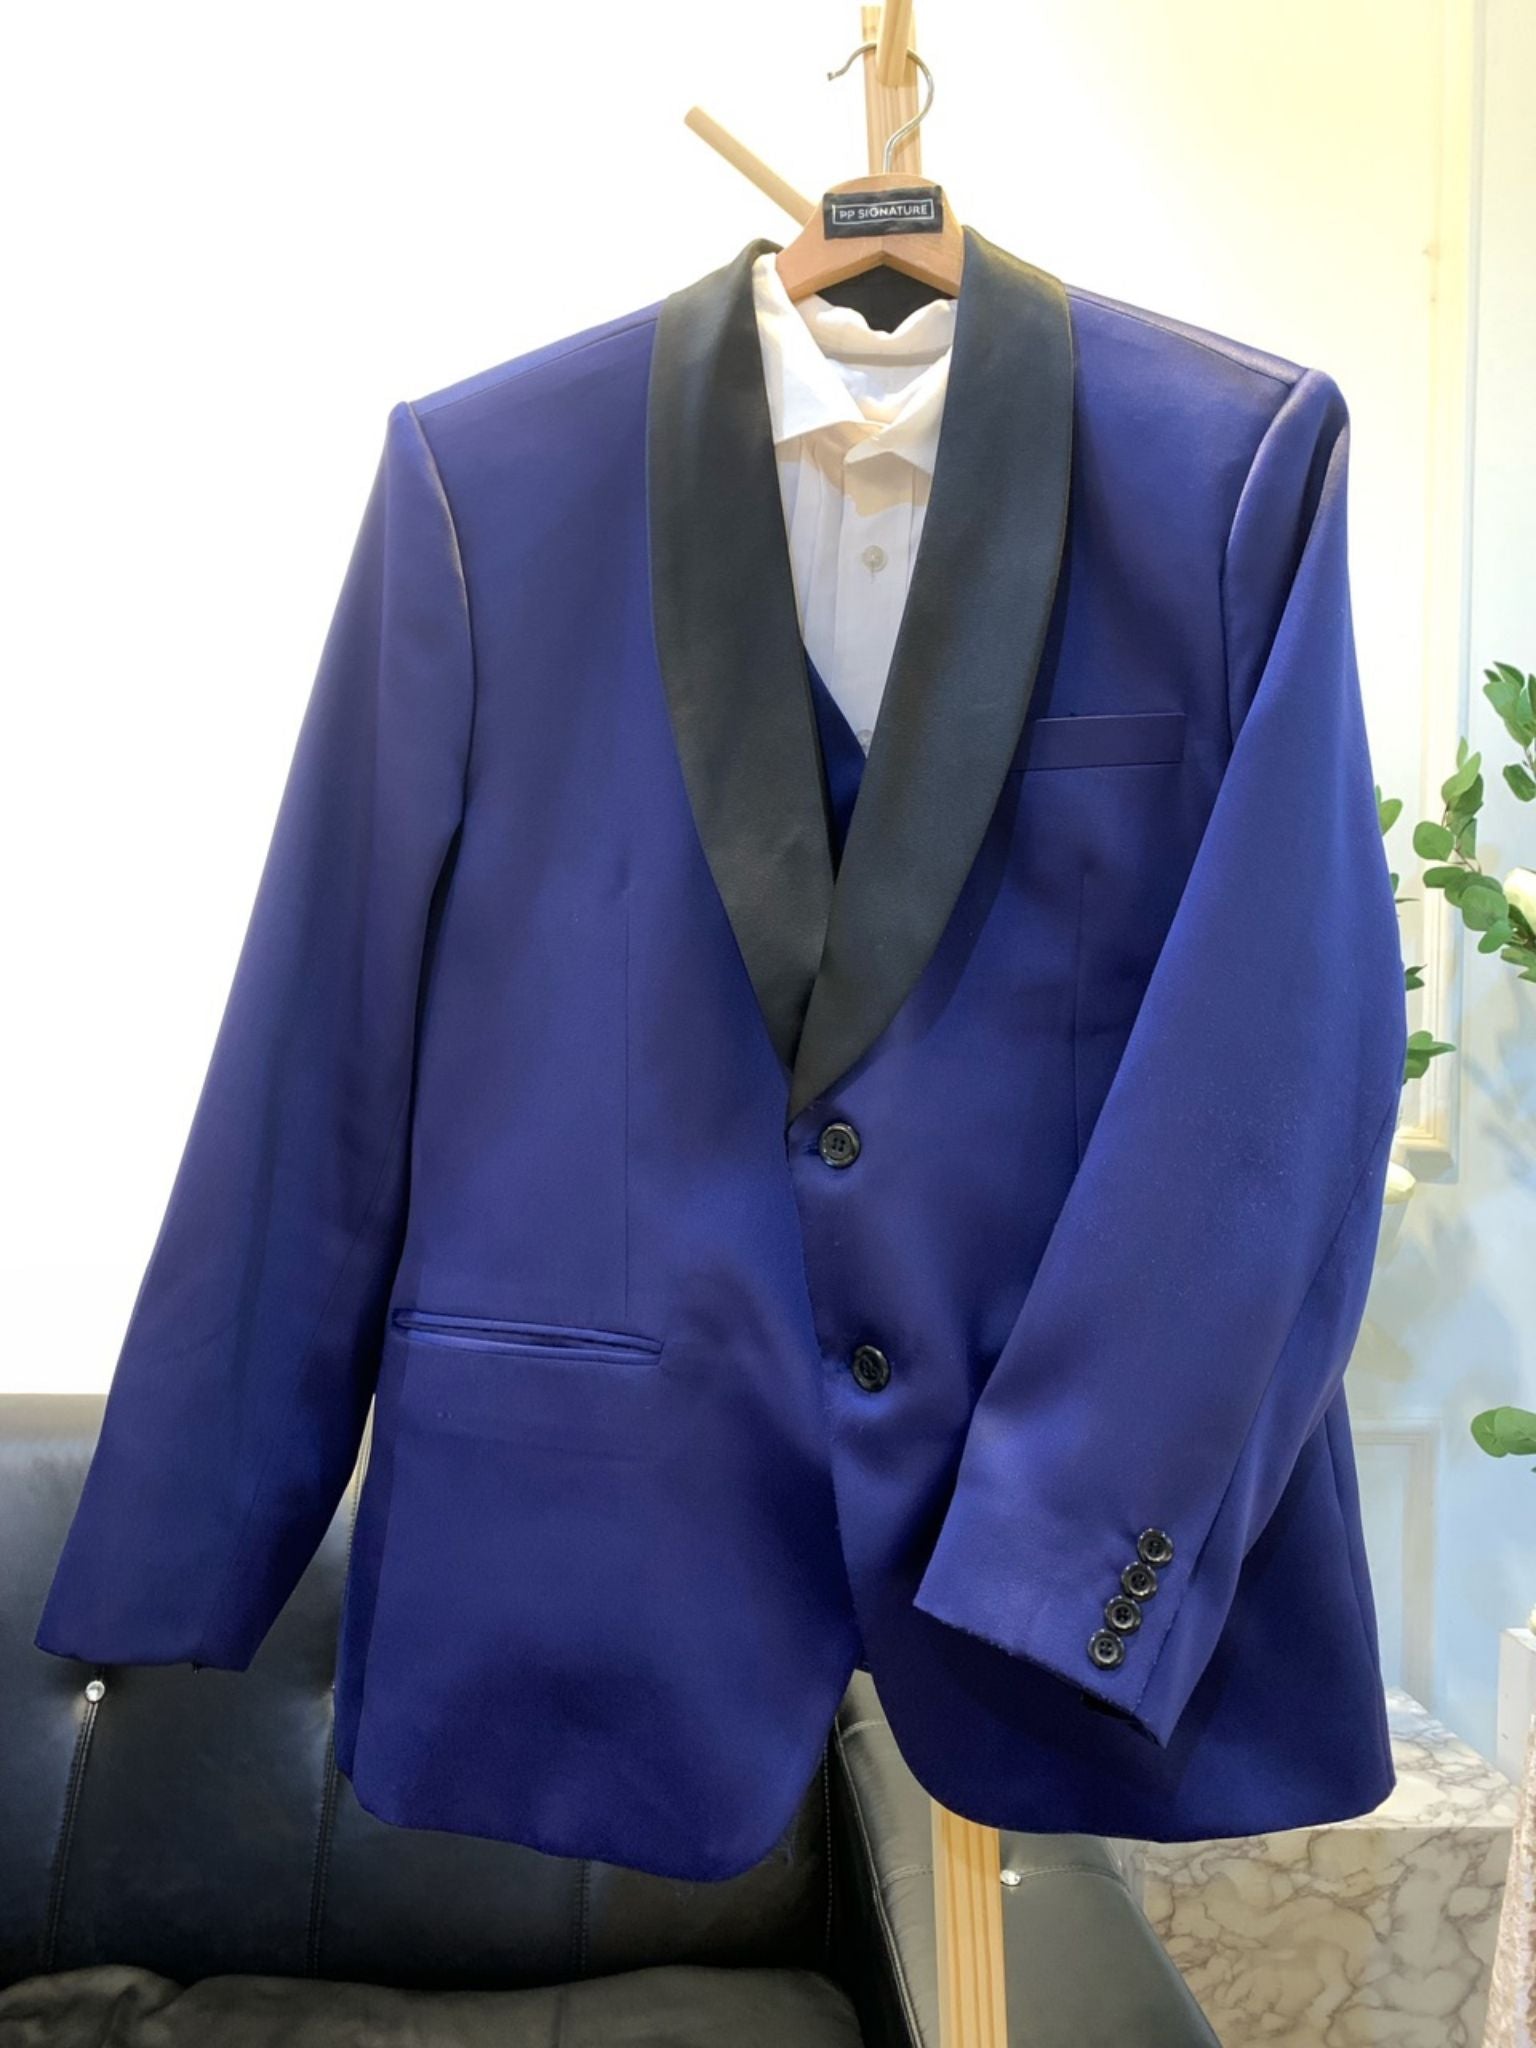 navy blue wedding suit-3 piece wedding suit-black shawl lapel suit-groom suit-wedding suit for men